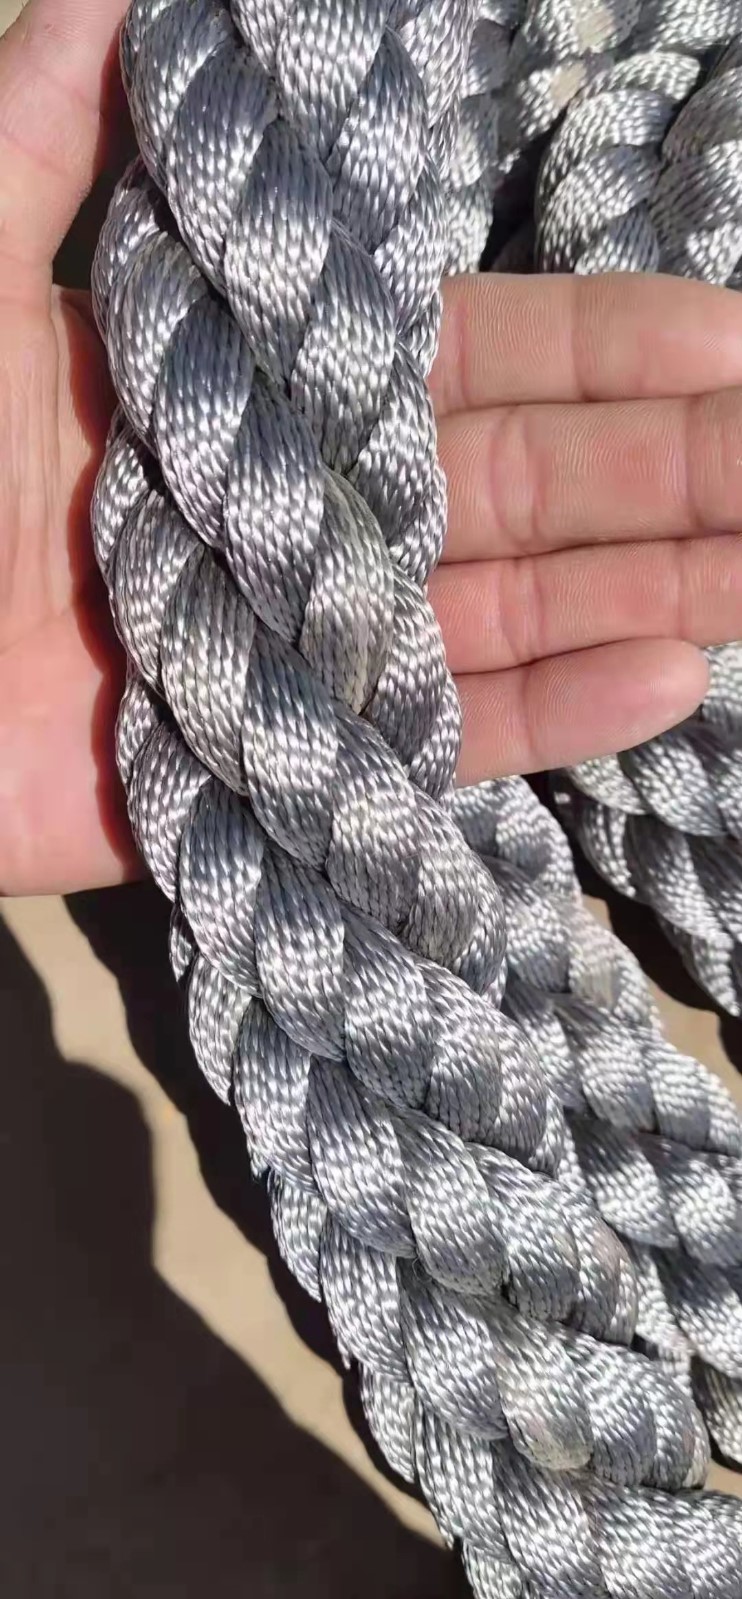 nylon rope.jpg